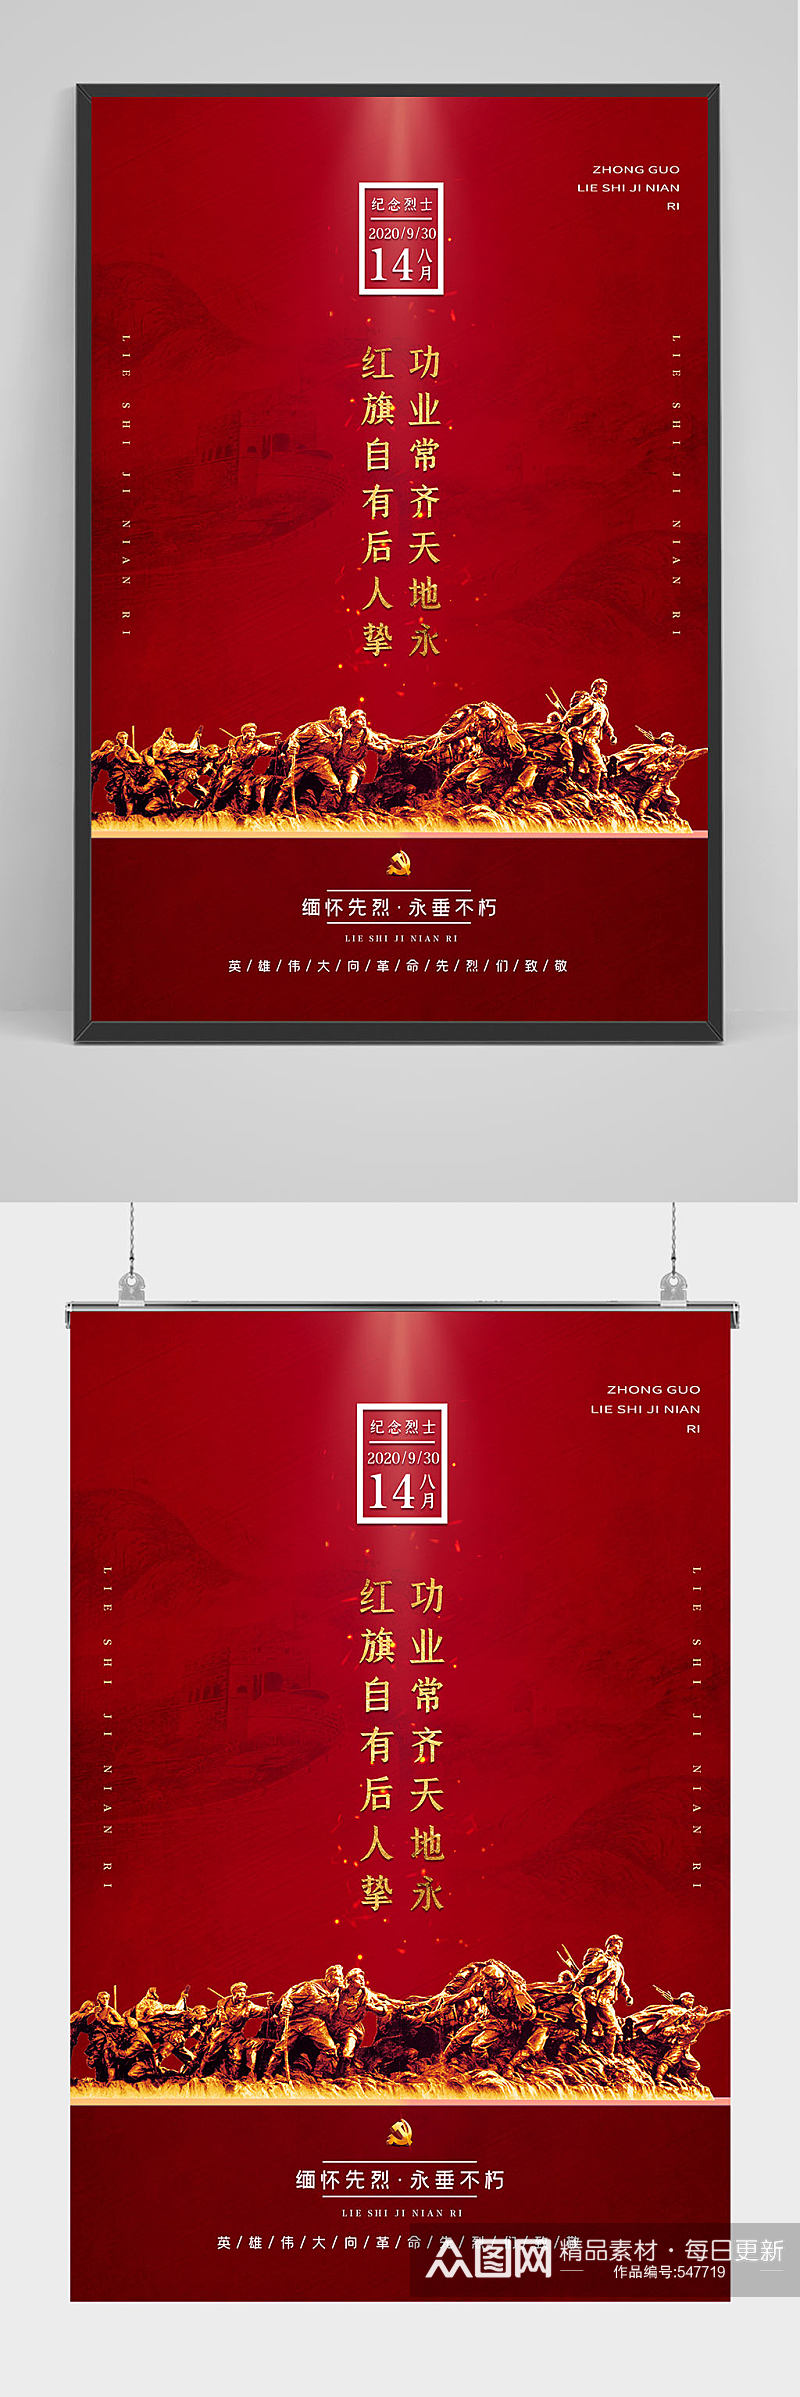 精品红色党建中国烈士纪念日海报设计素材